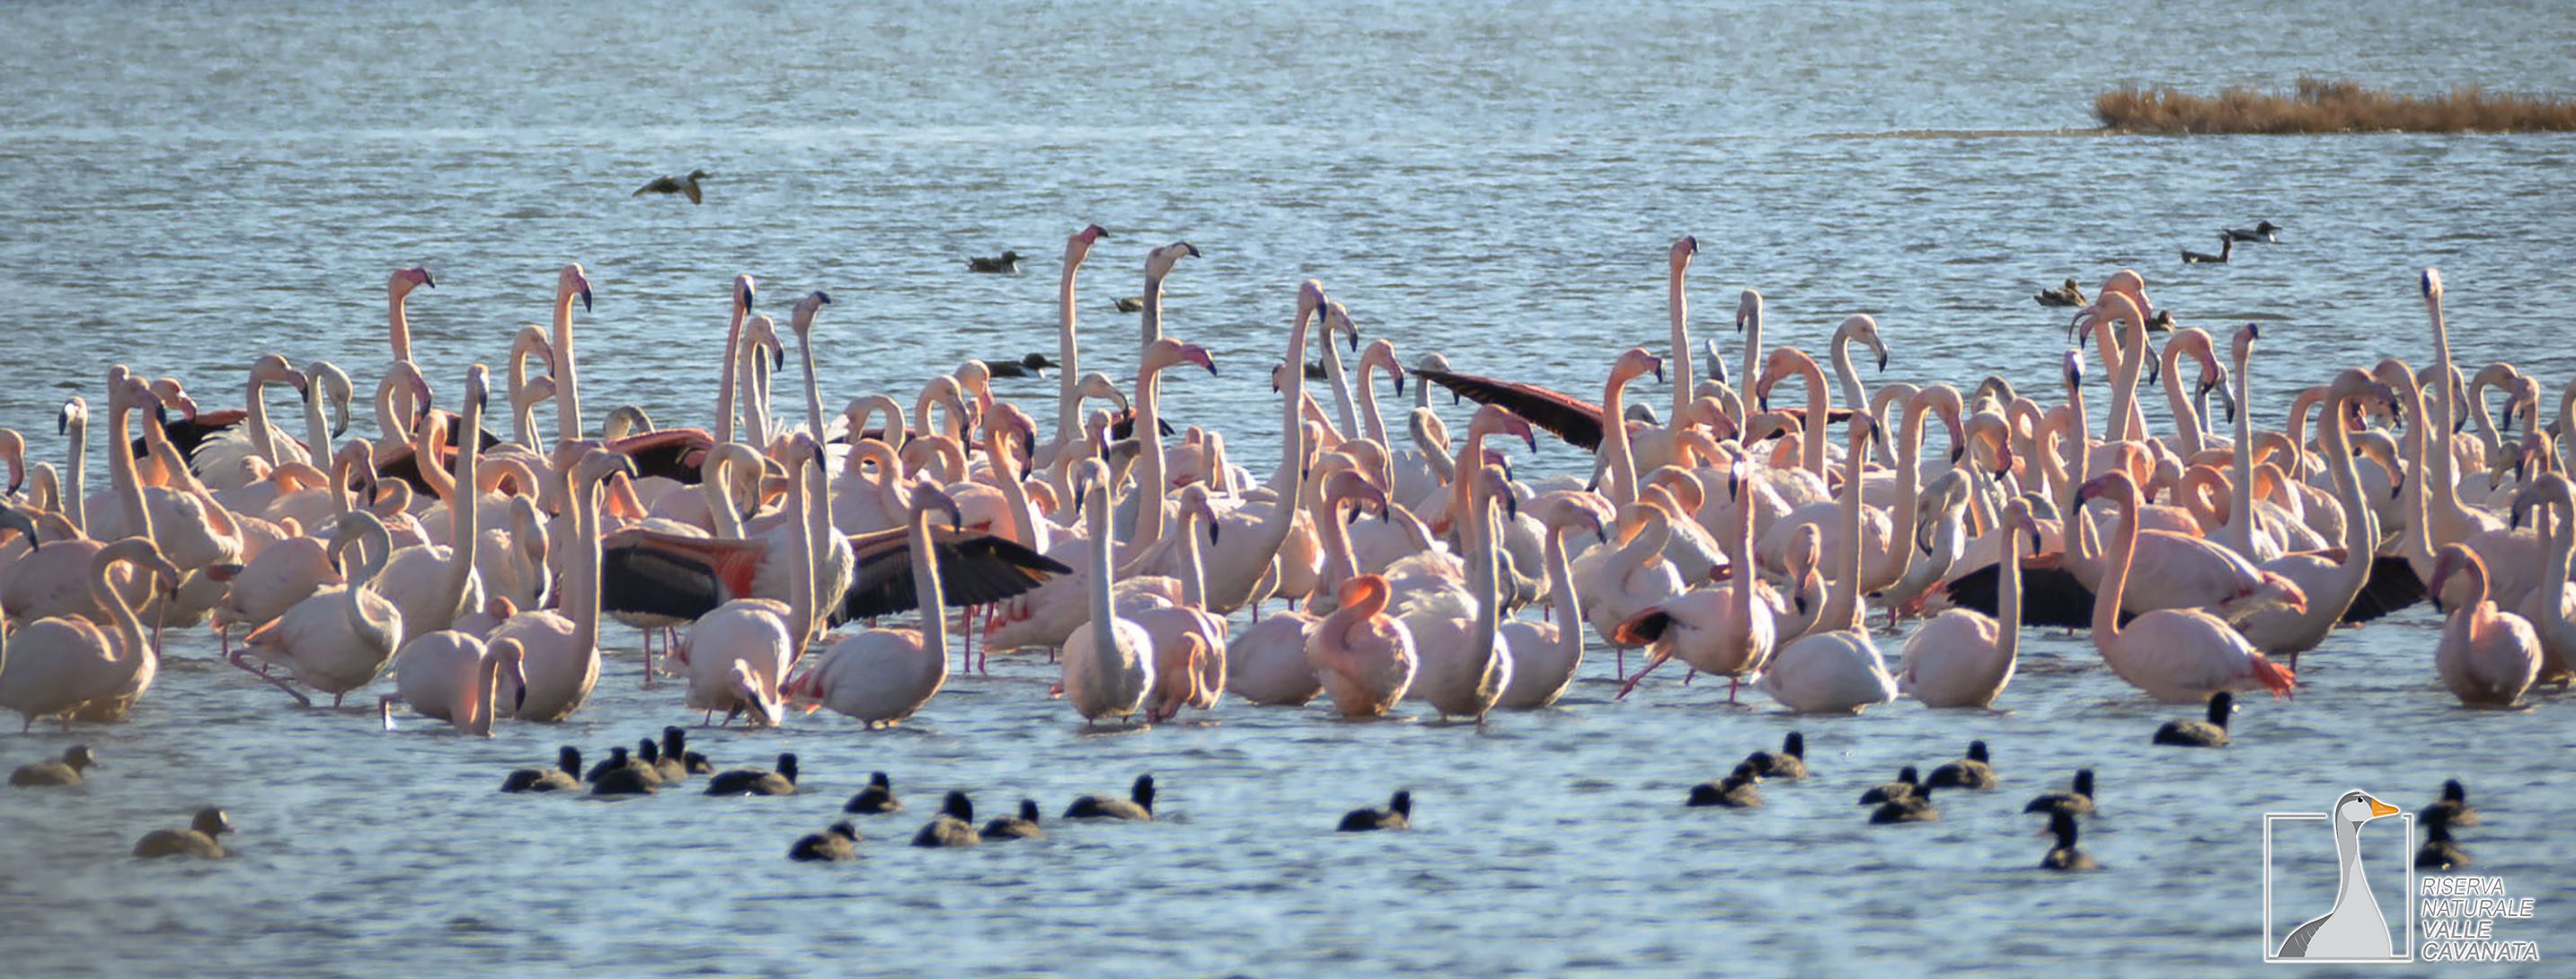 flamingok_3.jpg